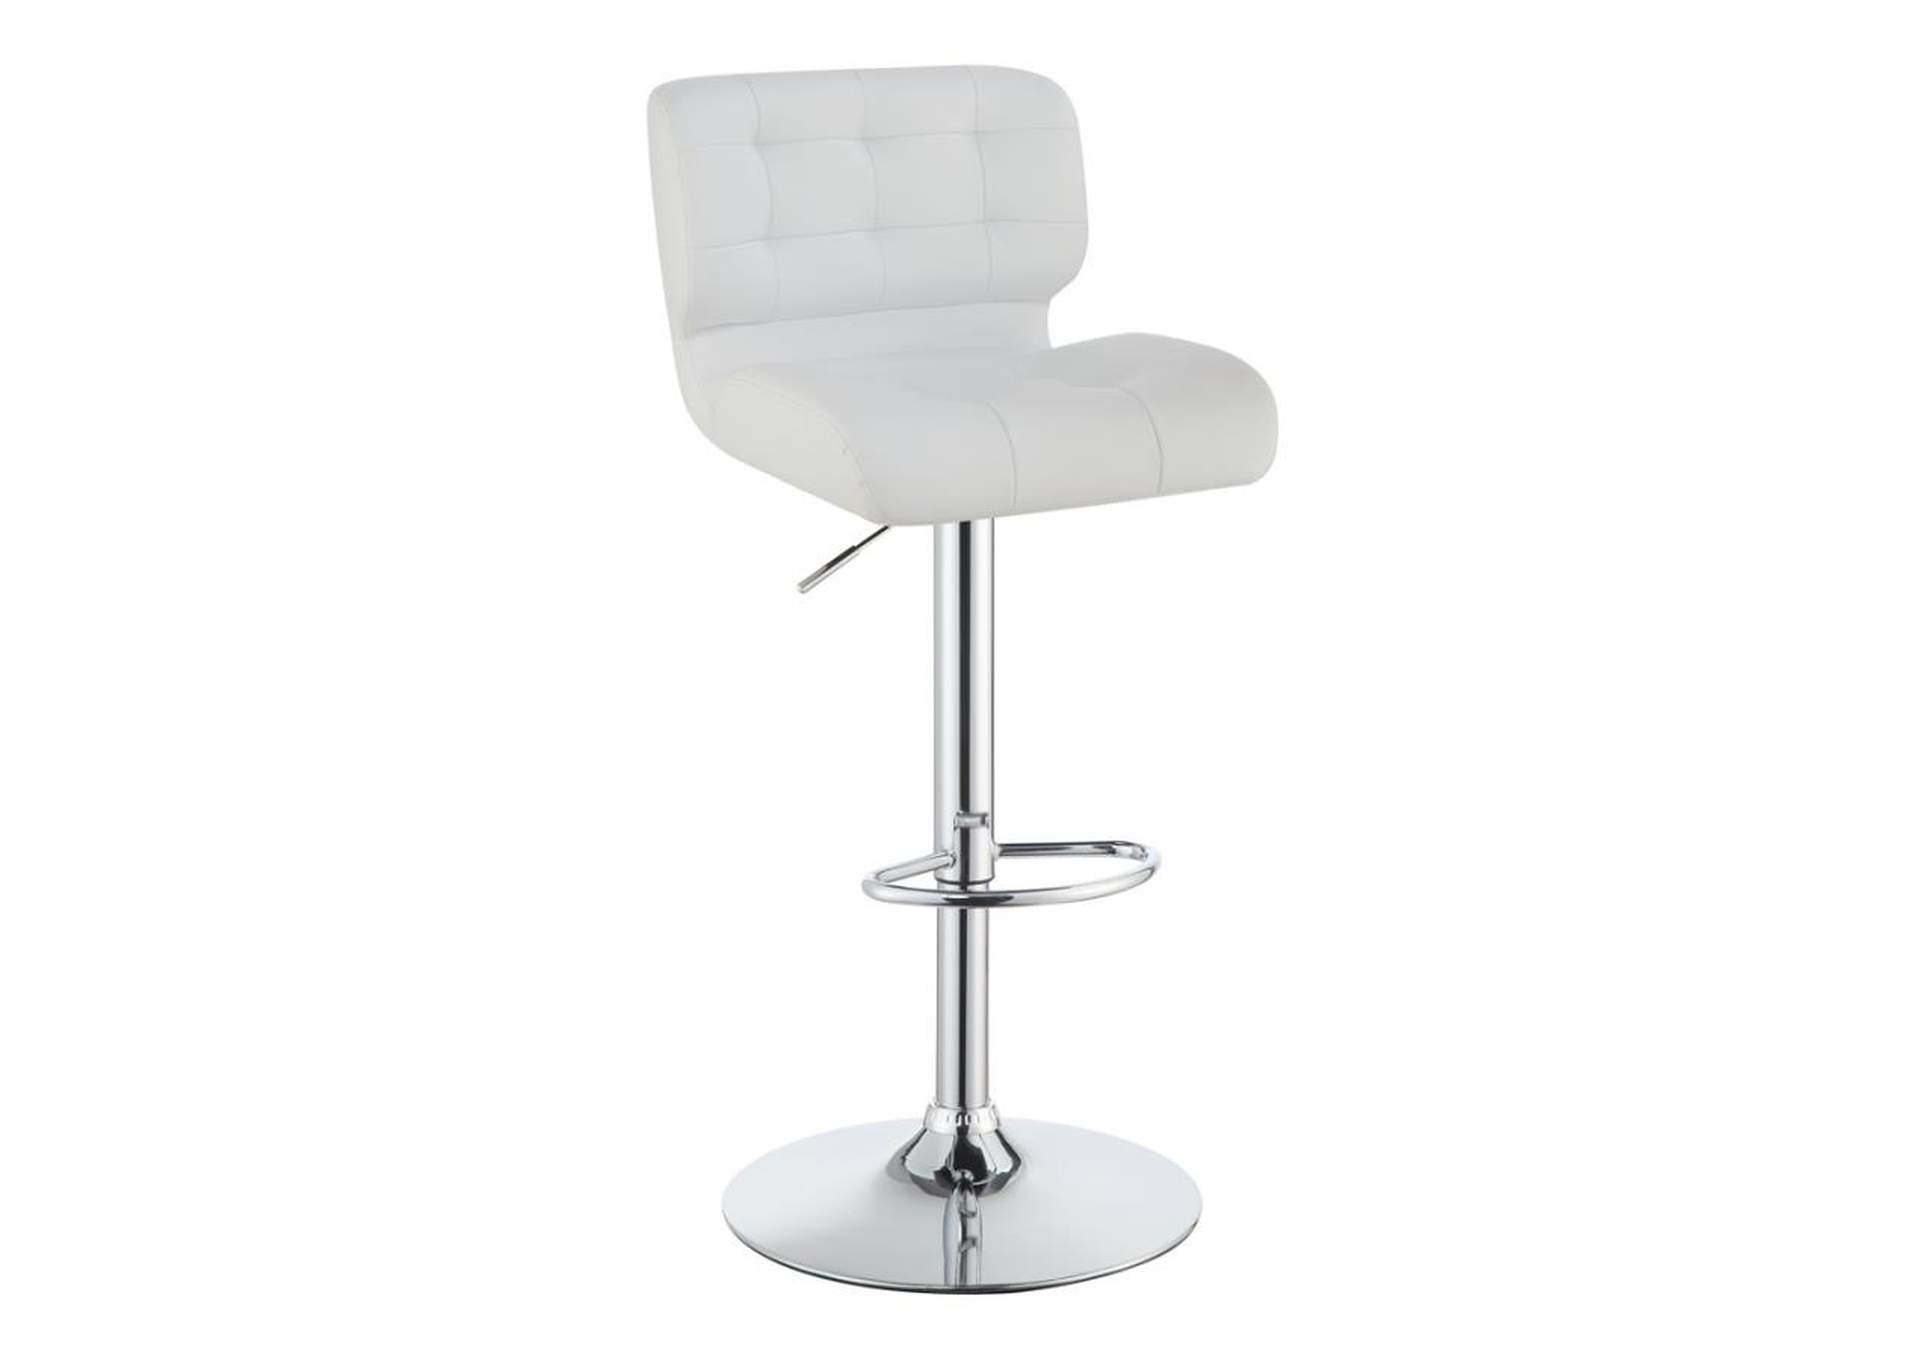 Azalea Upholstered Adjustable Bar Stools Chrome And White (Set Of 2),Coaster Furniture